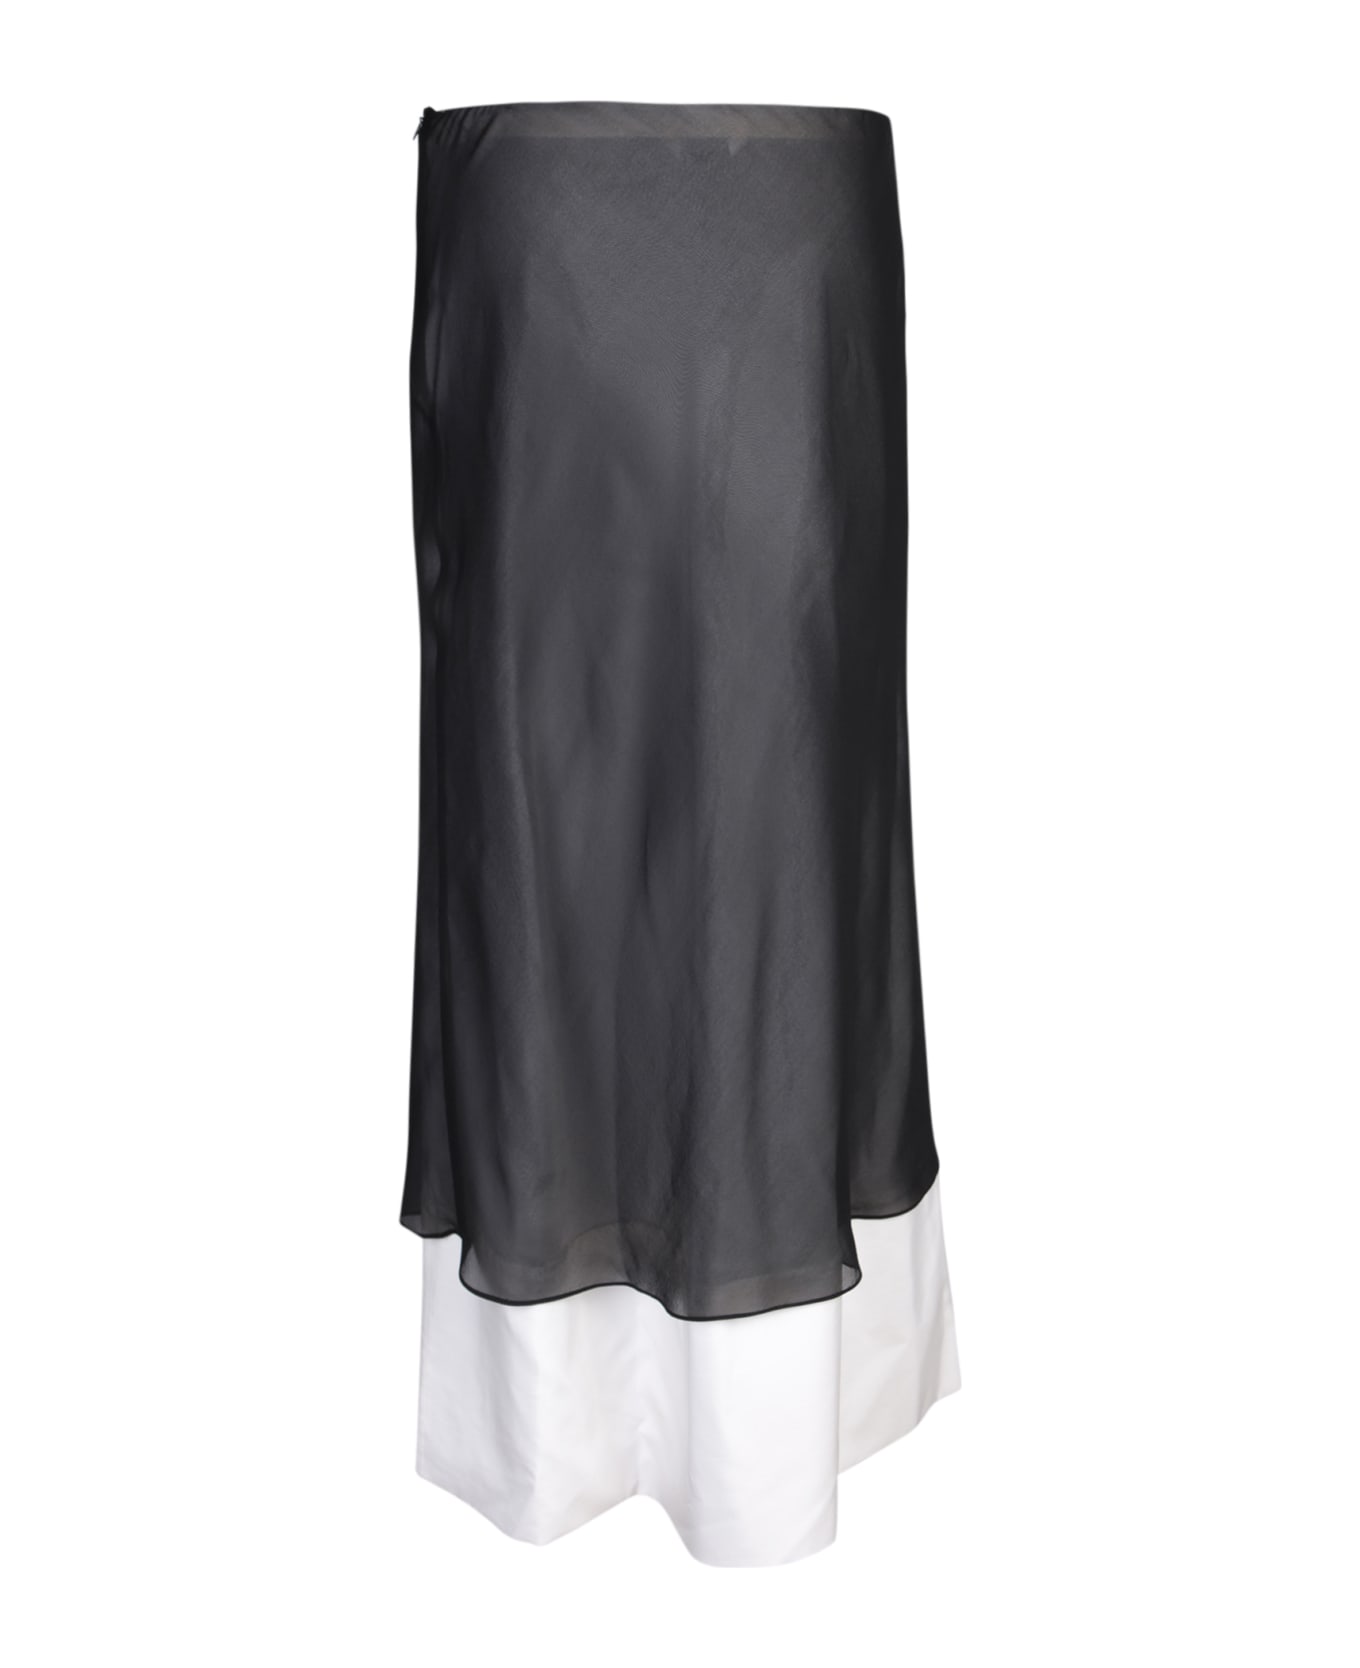 Quira Double Underskirt Skirt In Black/white - Black